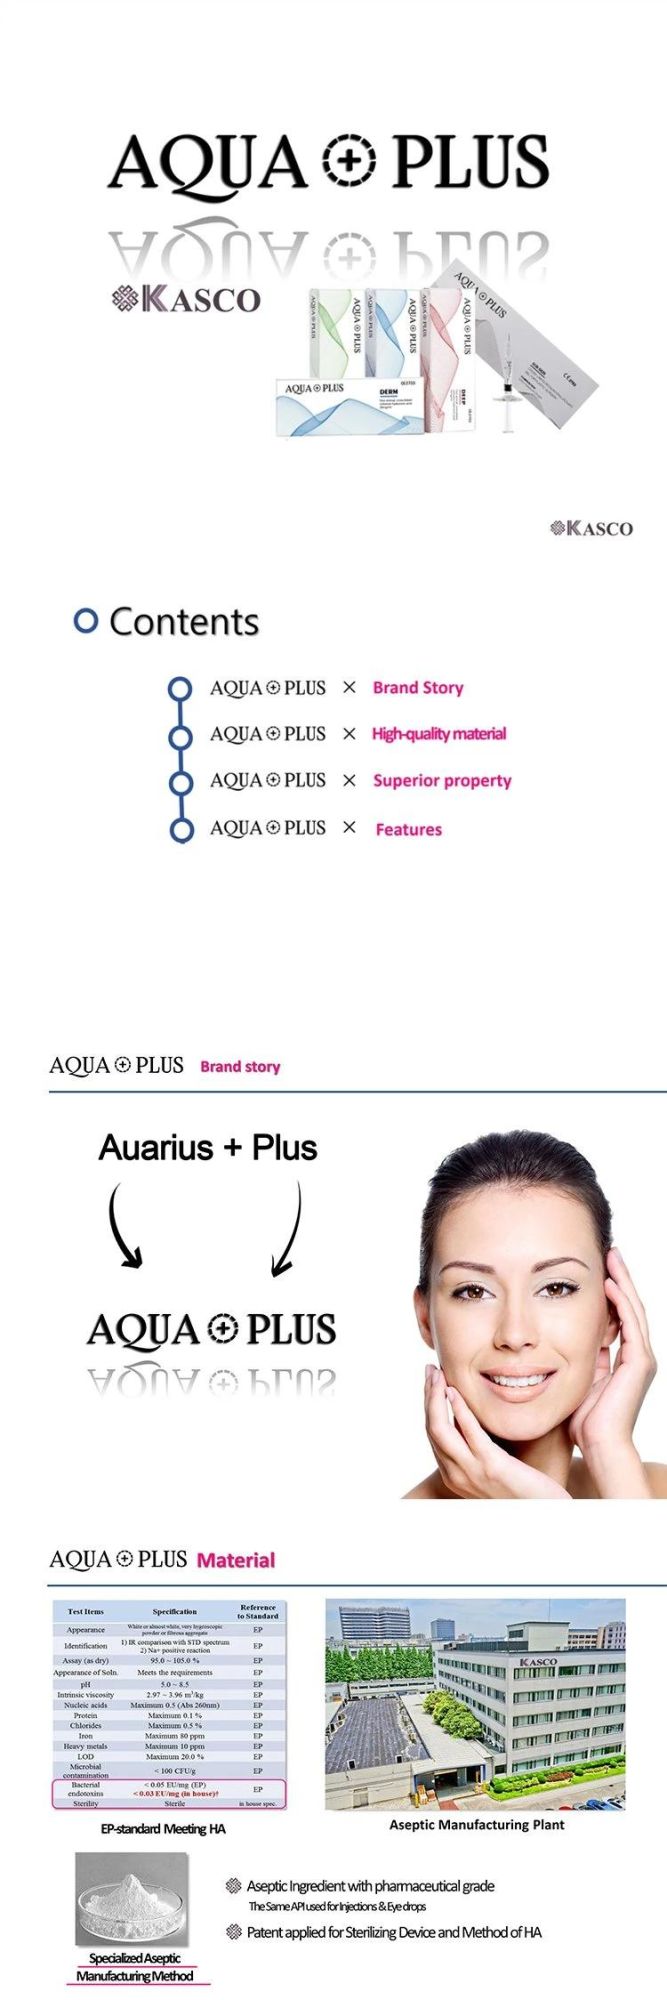 Aqua Plus Plastic Ha Filler on Face Injection Hyaluronic Acid Dermal Filler Injection